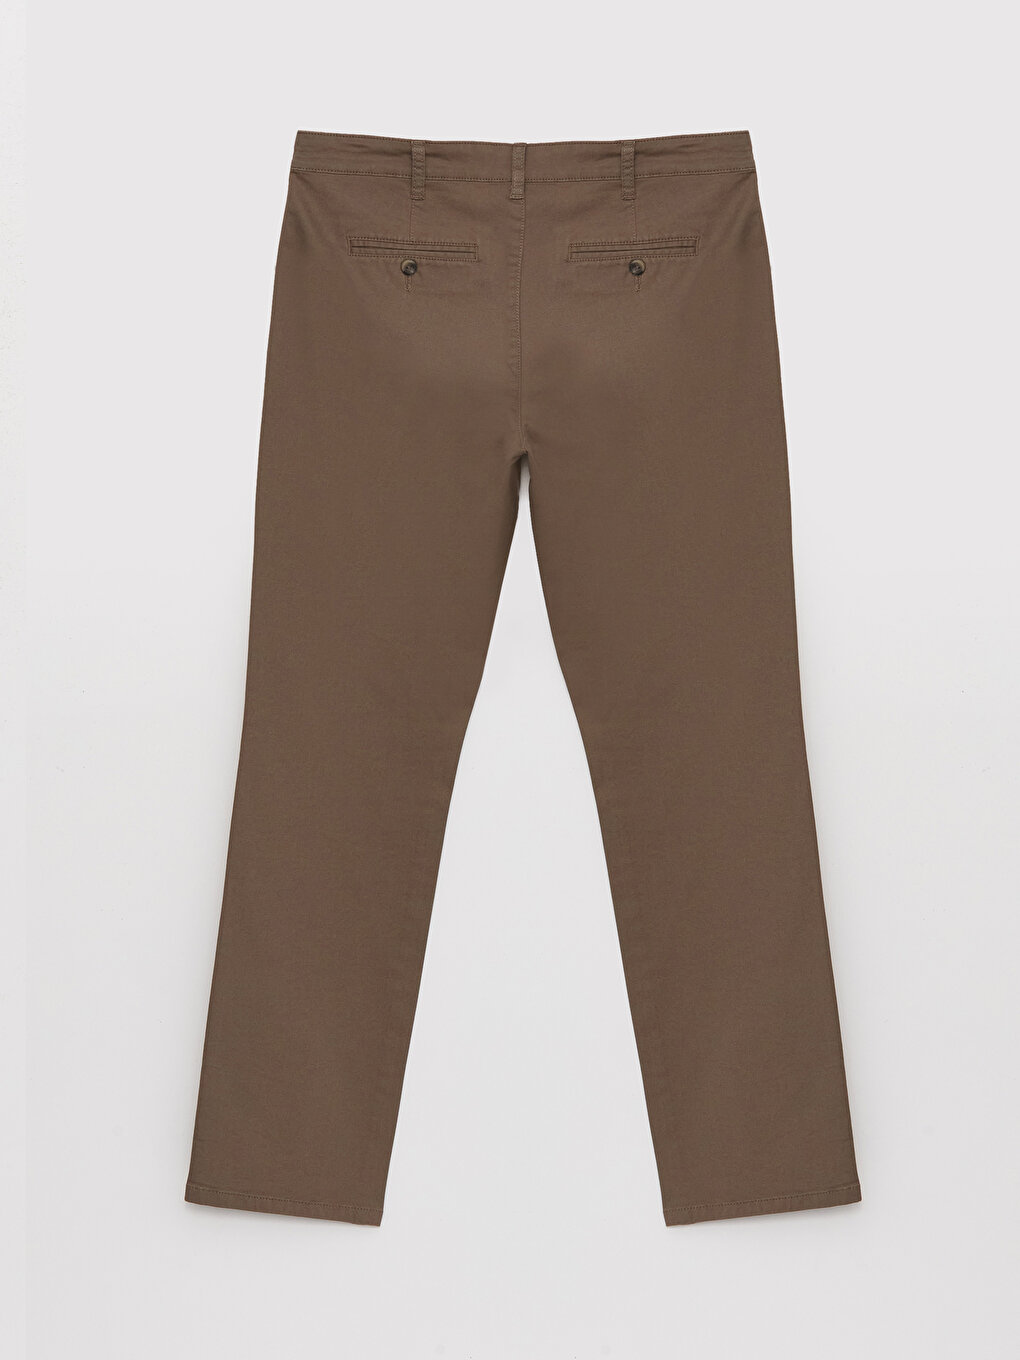 Standard Pattern Men's Chino Trousers -S40158Z8-KDE - S40158Z8-KDE - LC  Waikiki